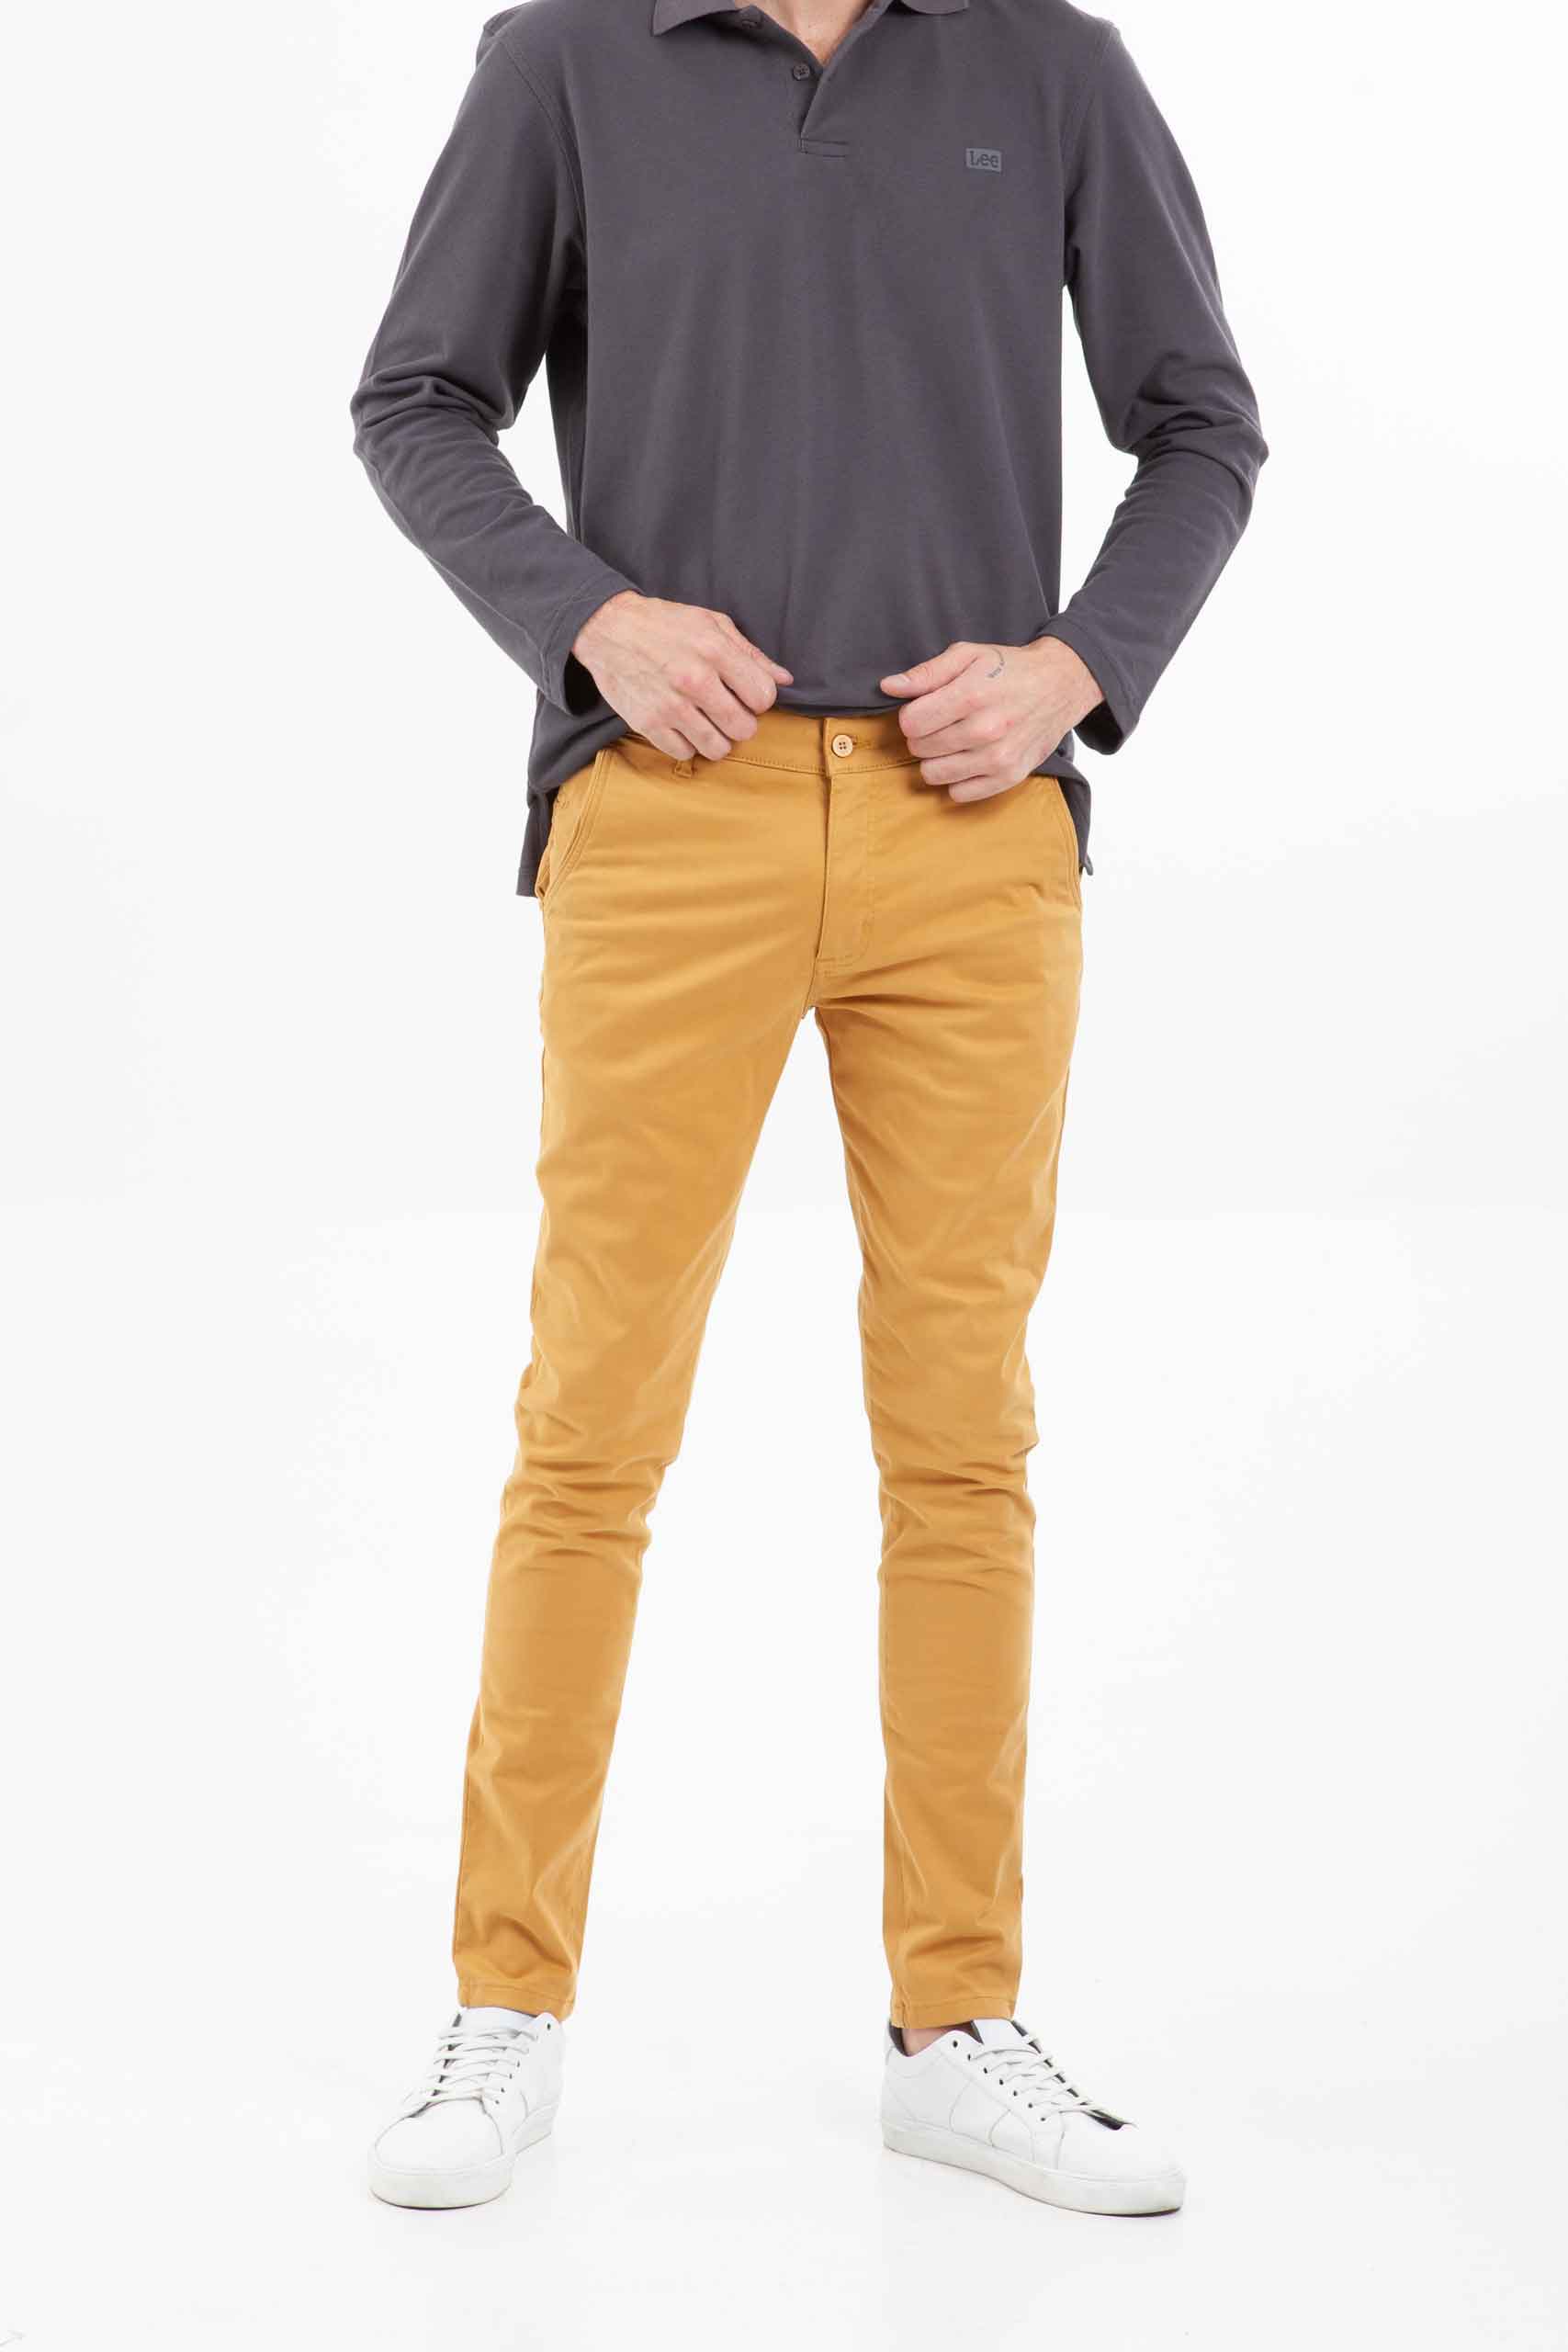 Vista frontal de pantalón color mostaza de marca lee